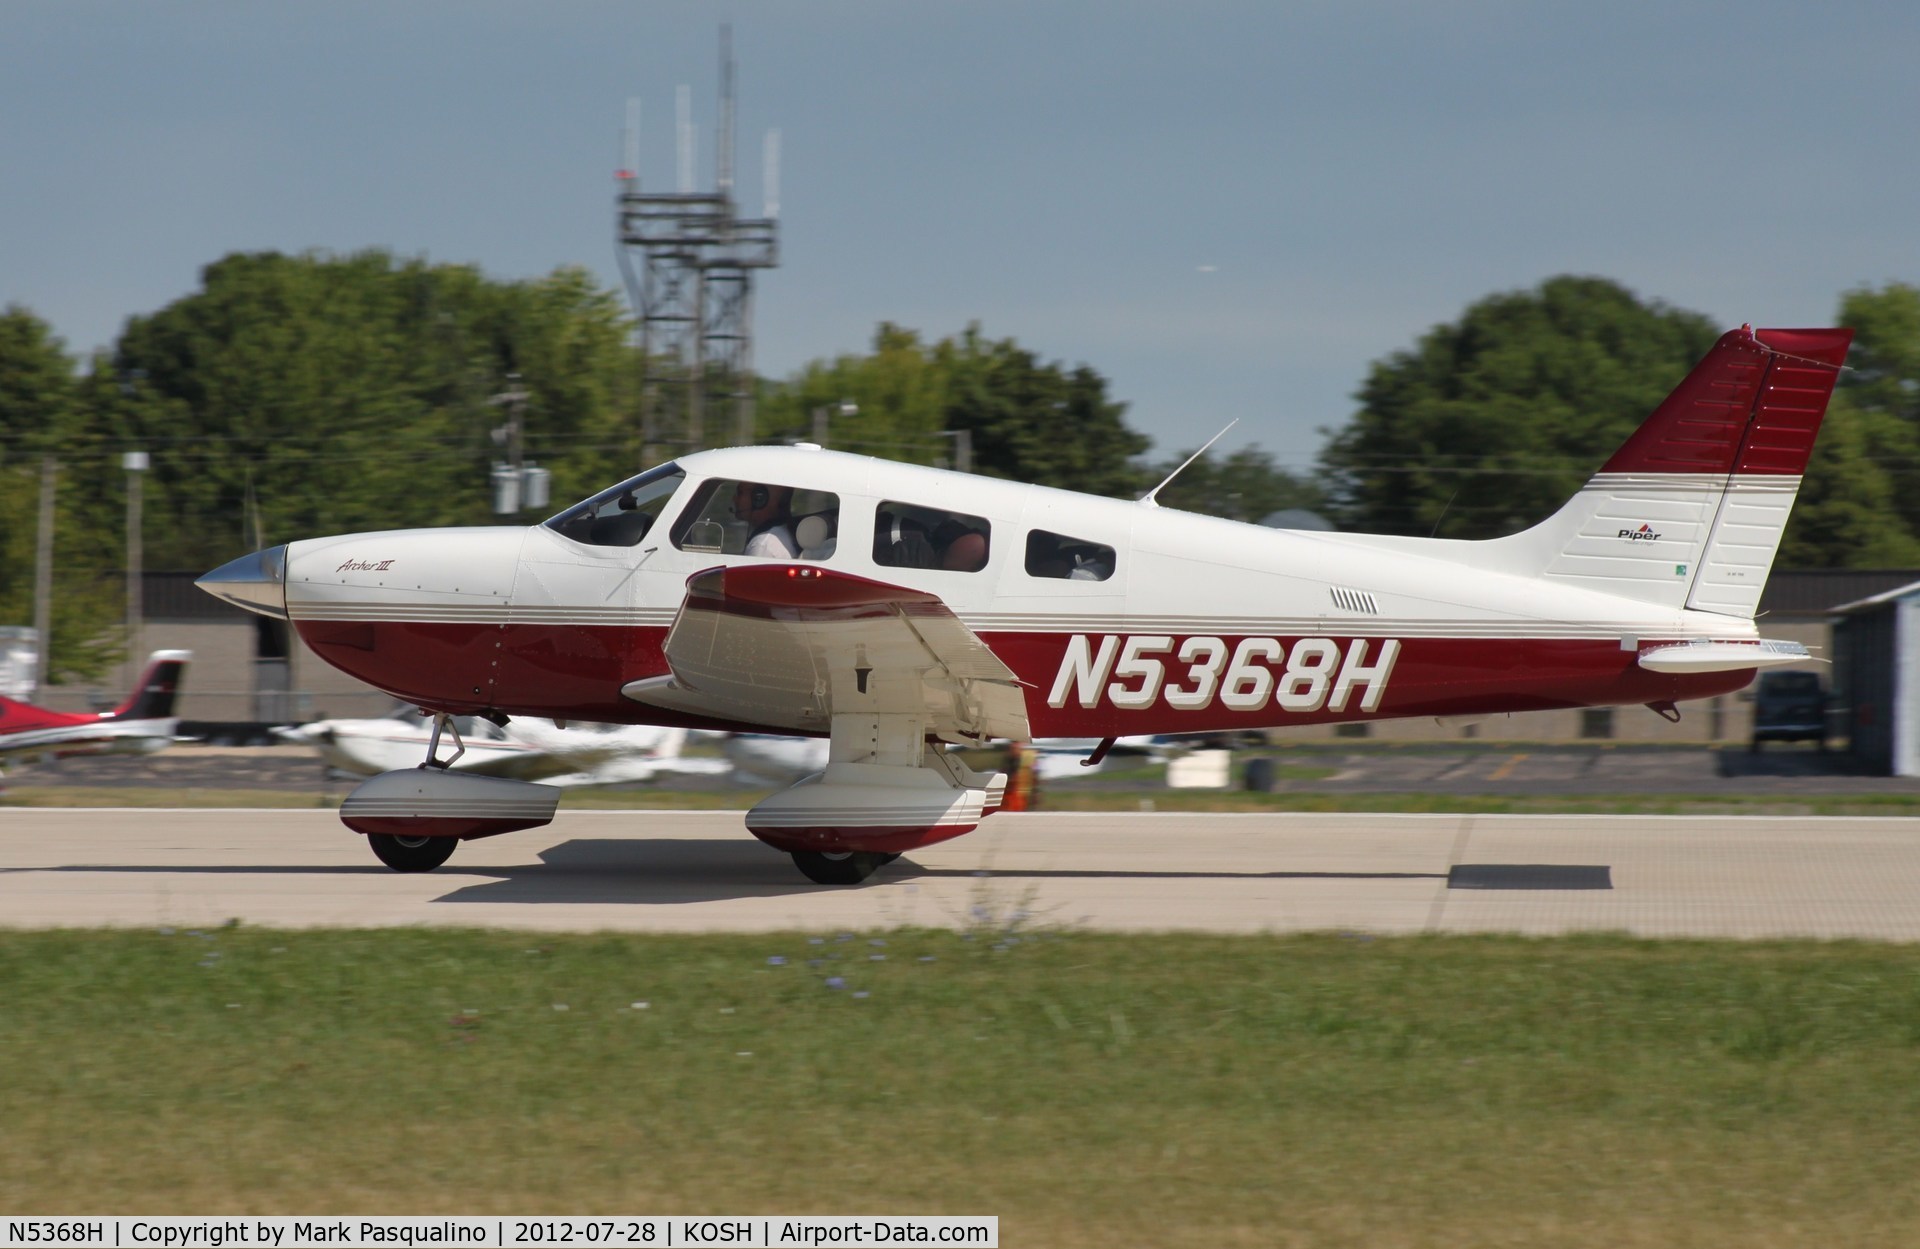 N5368H, 2003 Piper PA-28-181 Archer C/N 2843562, Piper PA-28-181